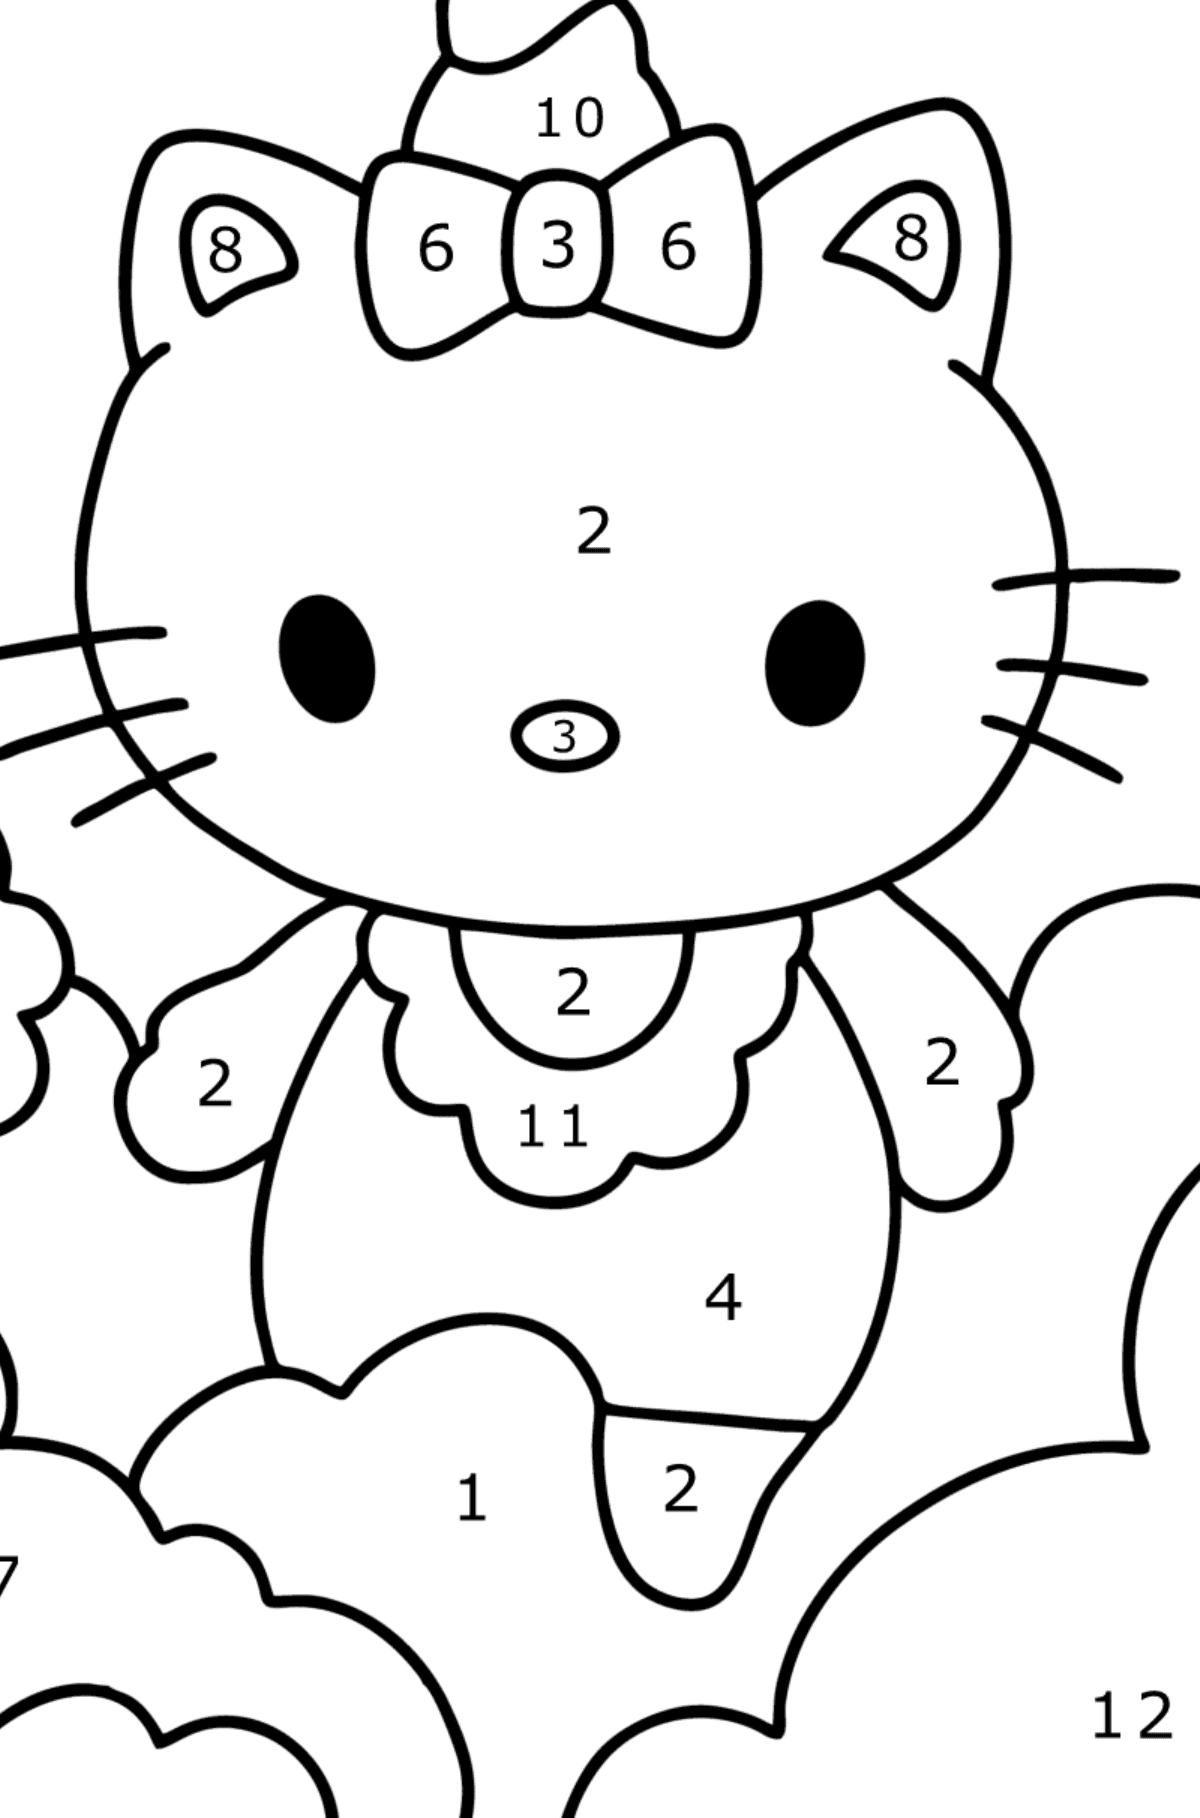 Boyama sayfası Hello Kitty tek boynuzlu at - Sayılarla Boyama çocuklar için